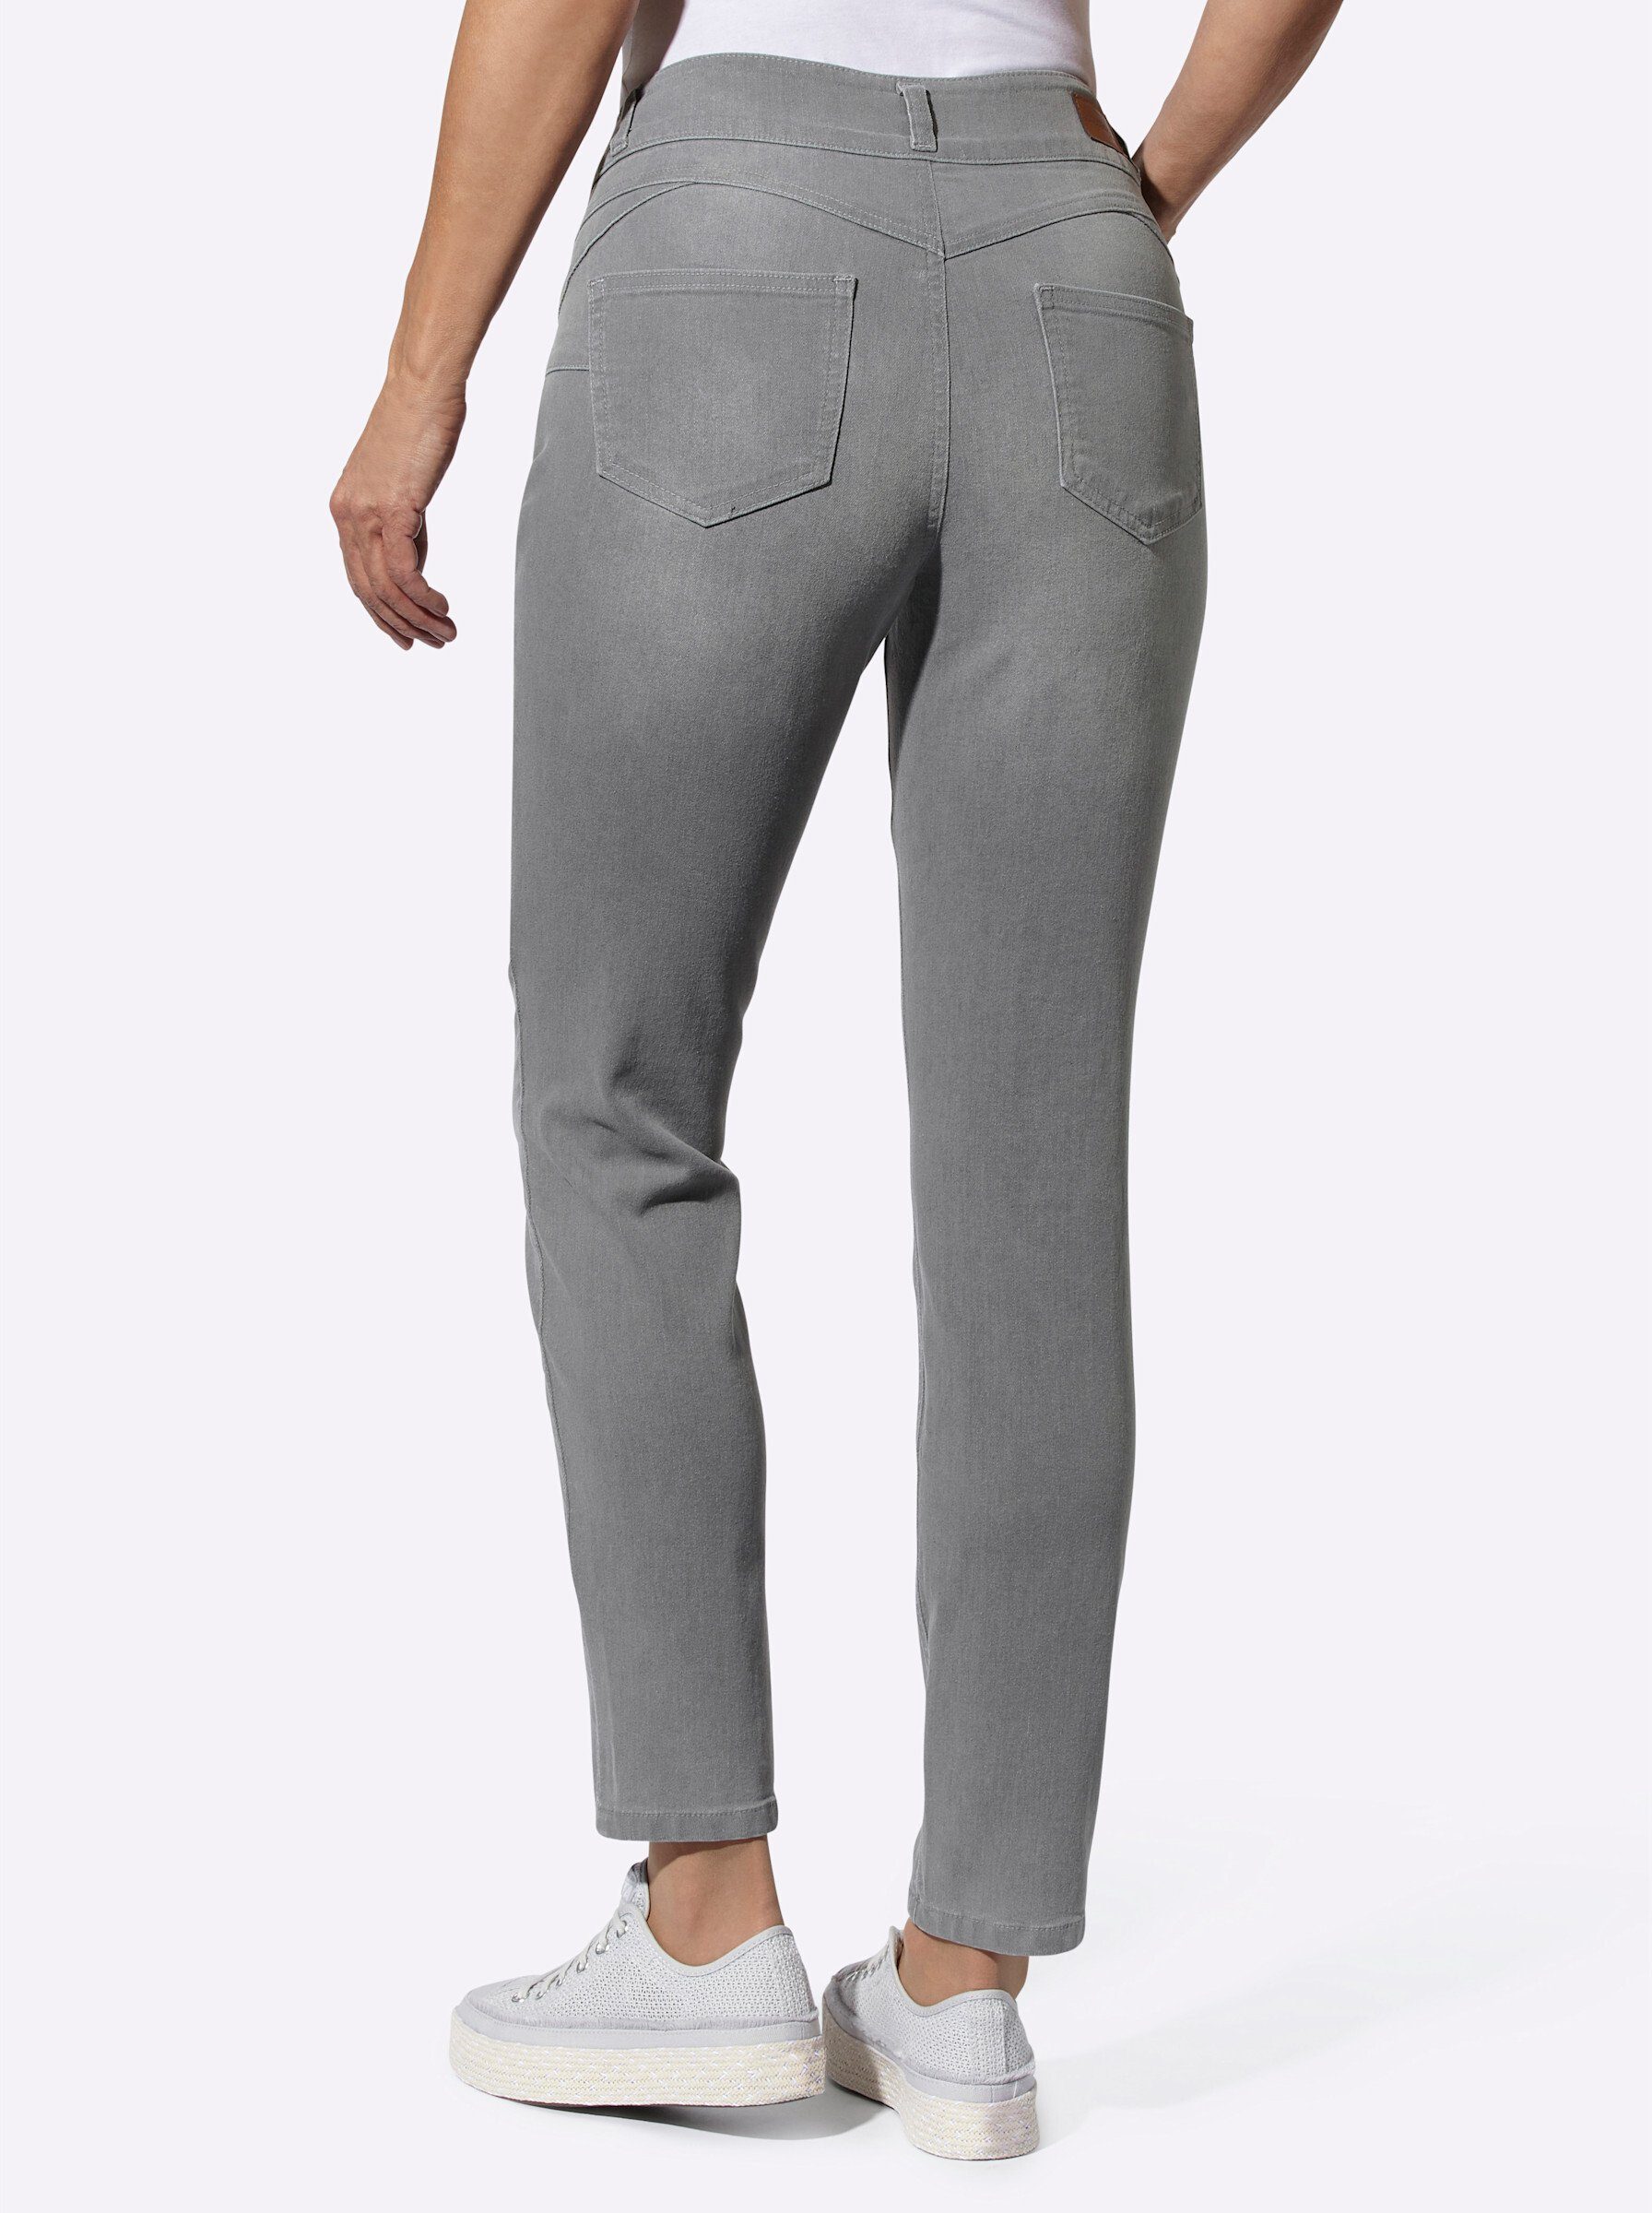 light WEIDEN Jeans Bequeme WITT grey-denim